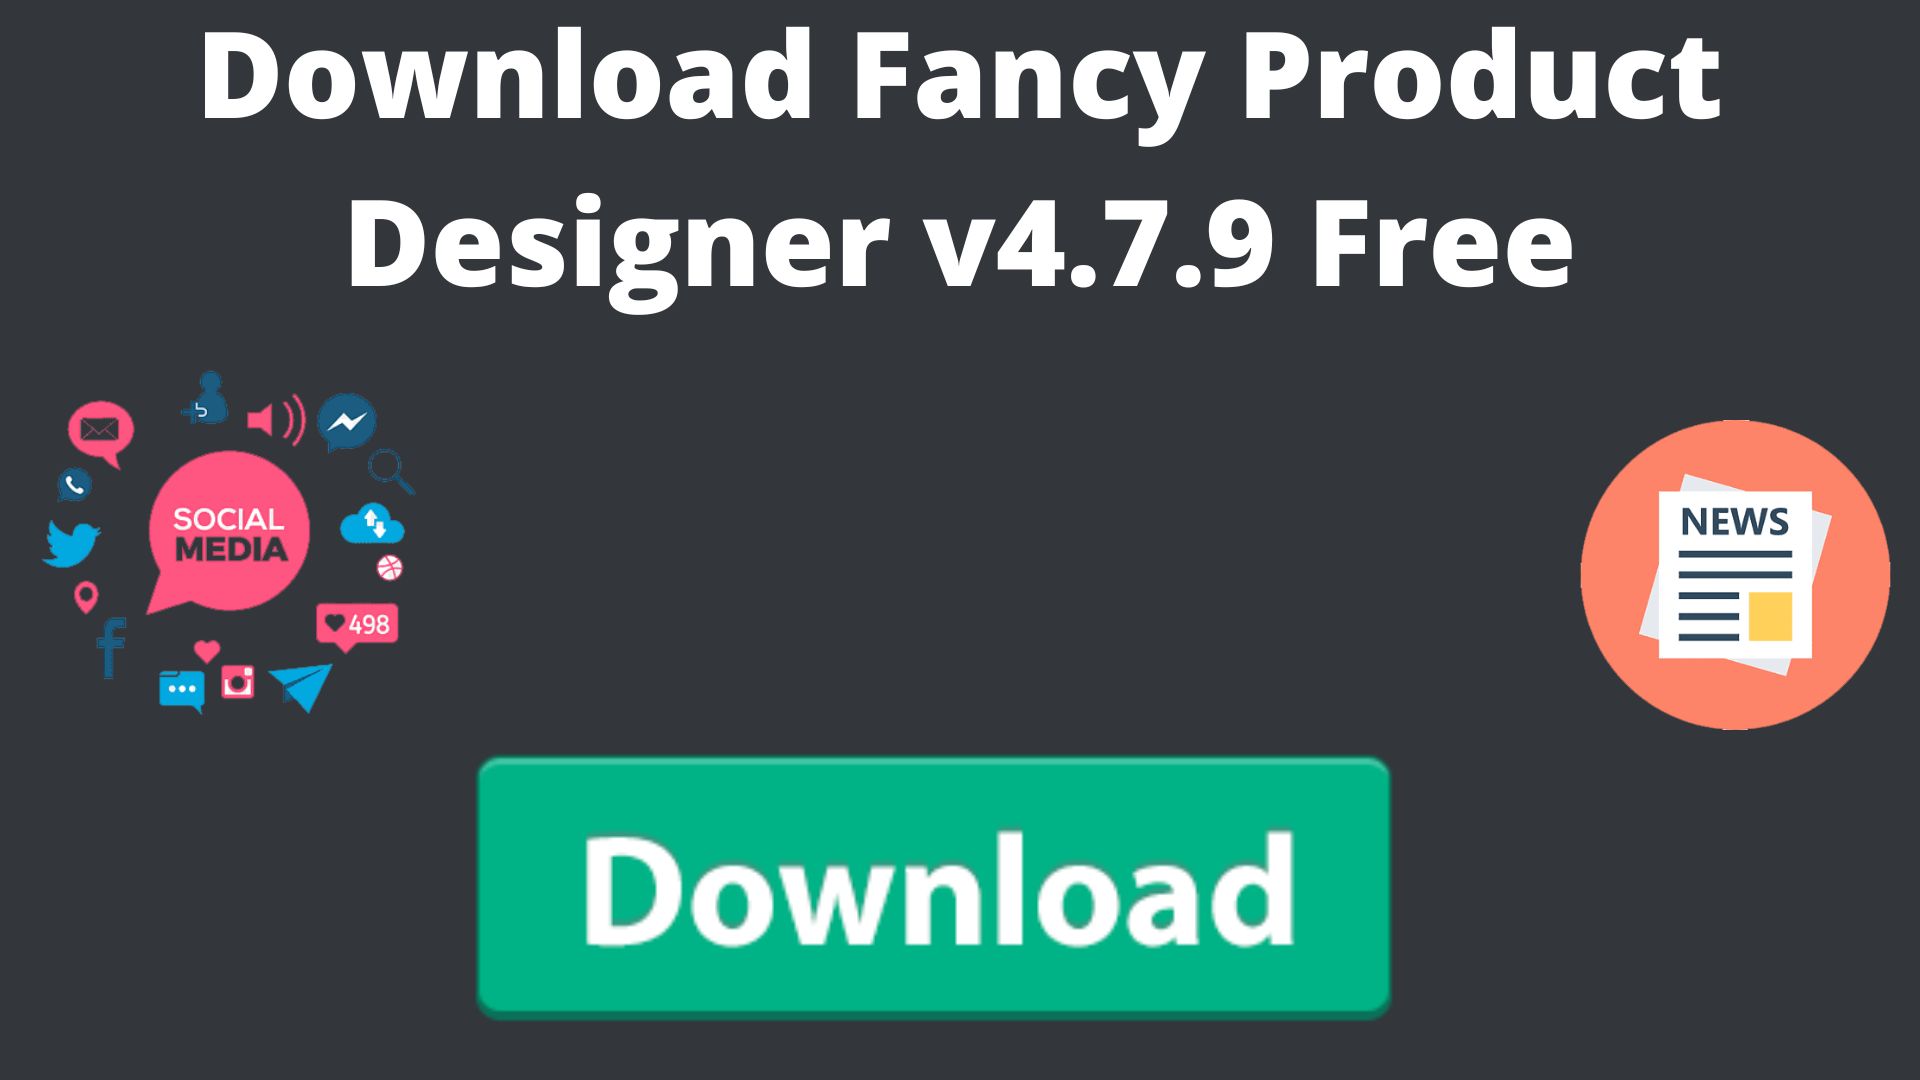 Download fancy product designer v4. 7. 9 free